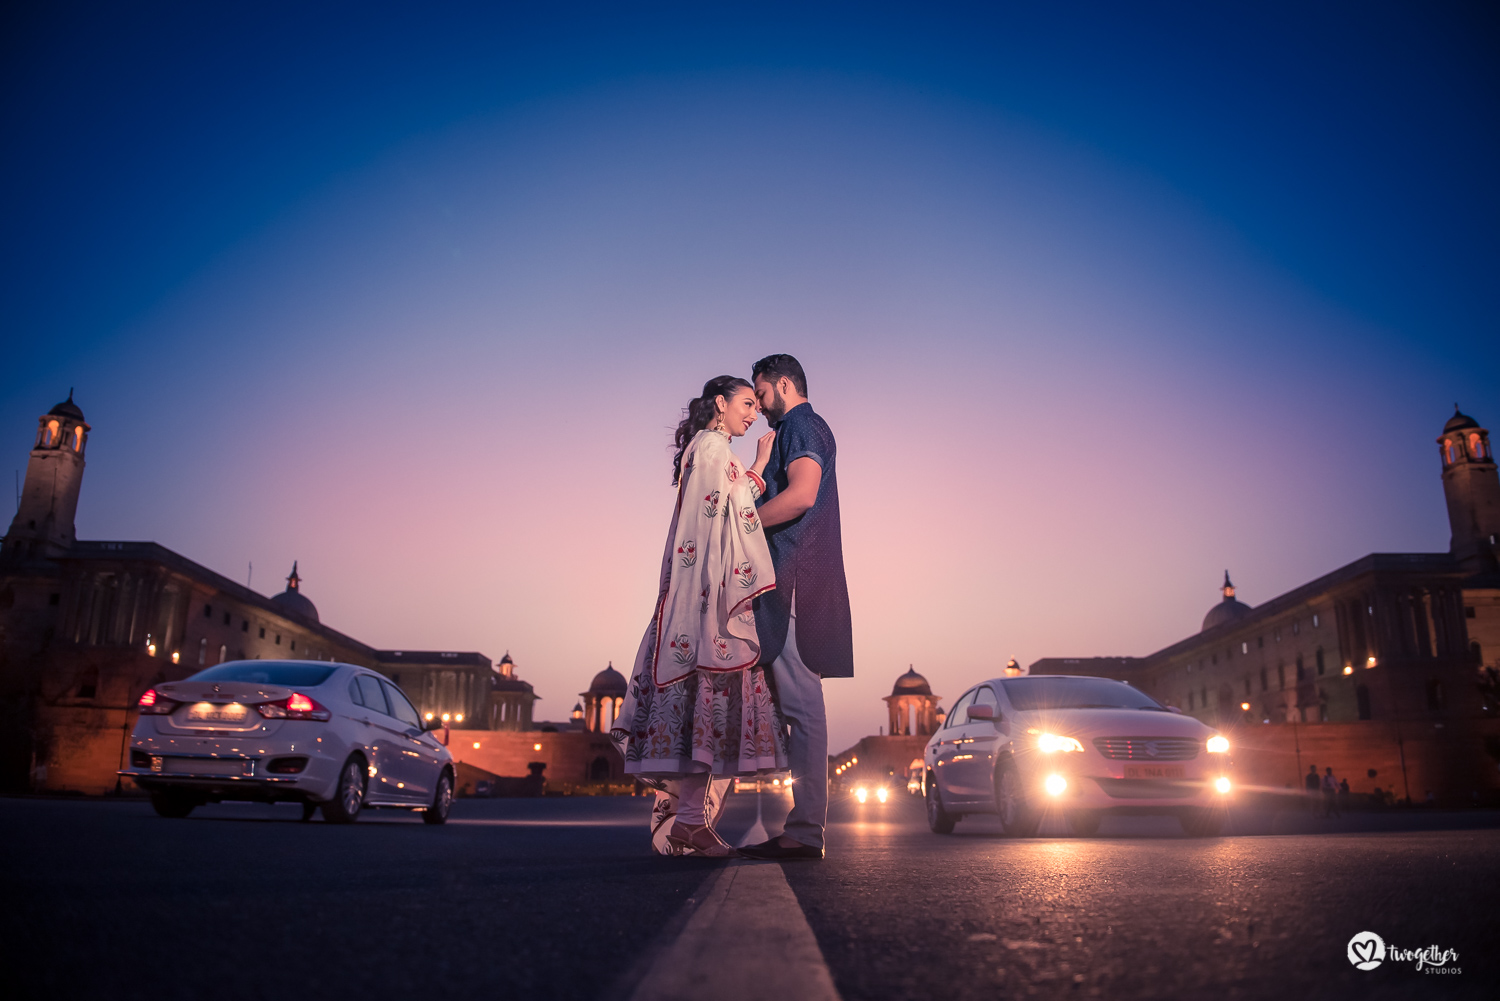 Pre-wedding couple portrait shoot Delhi photography